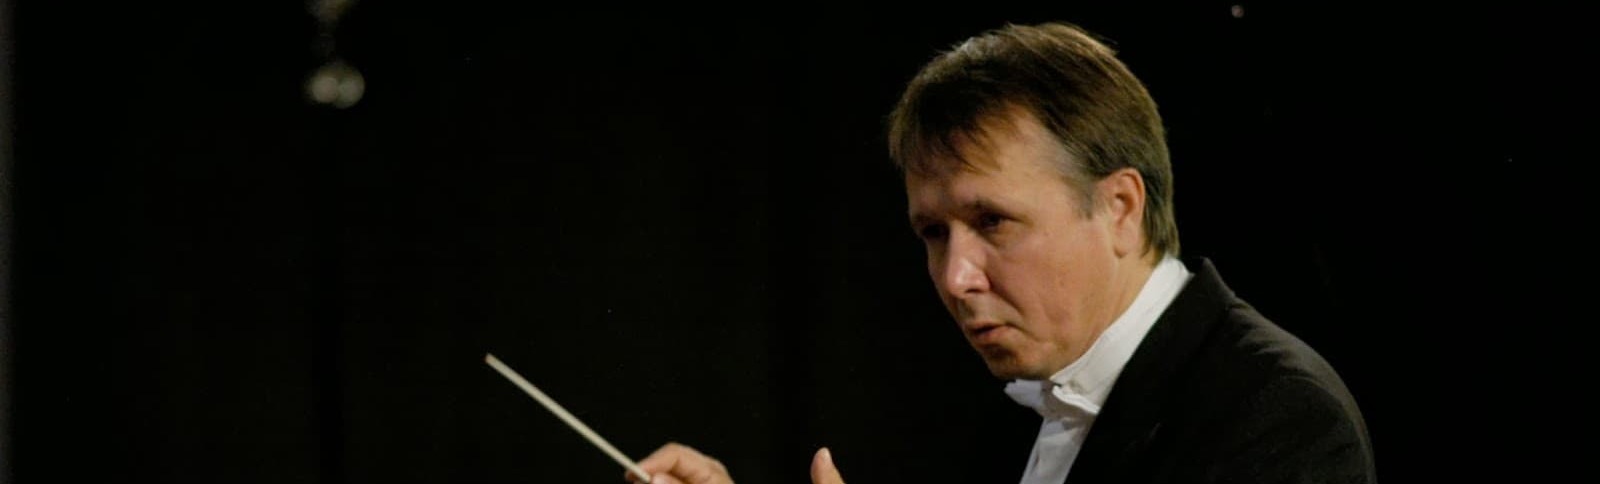 14 ноября прошла прямая трансляция сольного концерта Михаила Плетнева на фортепиано. 